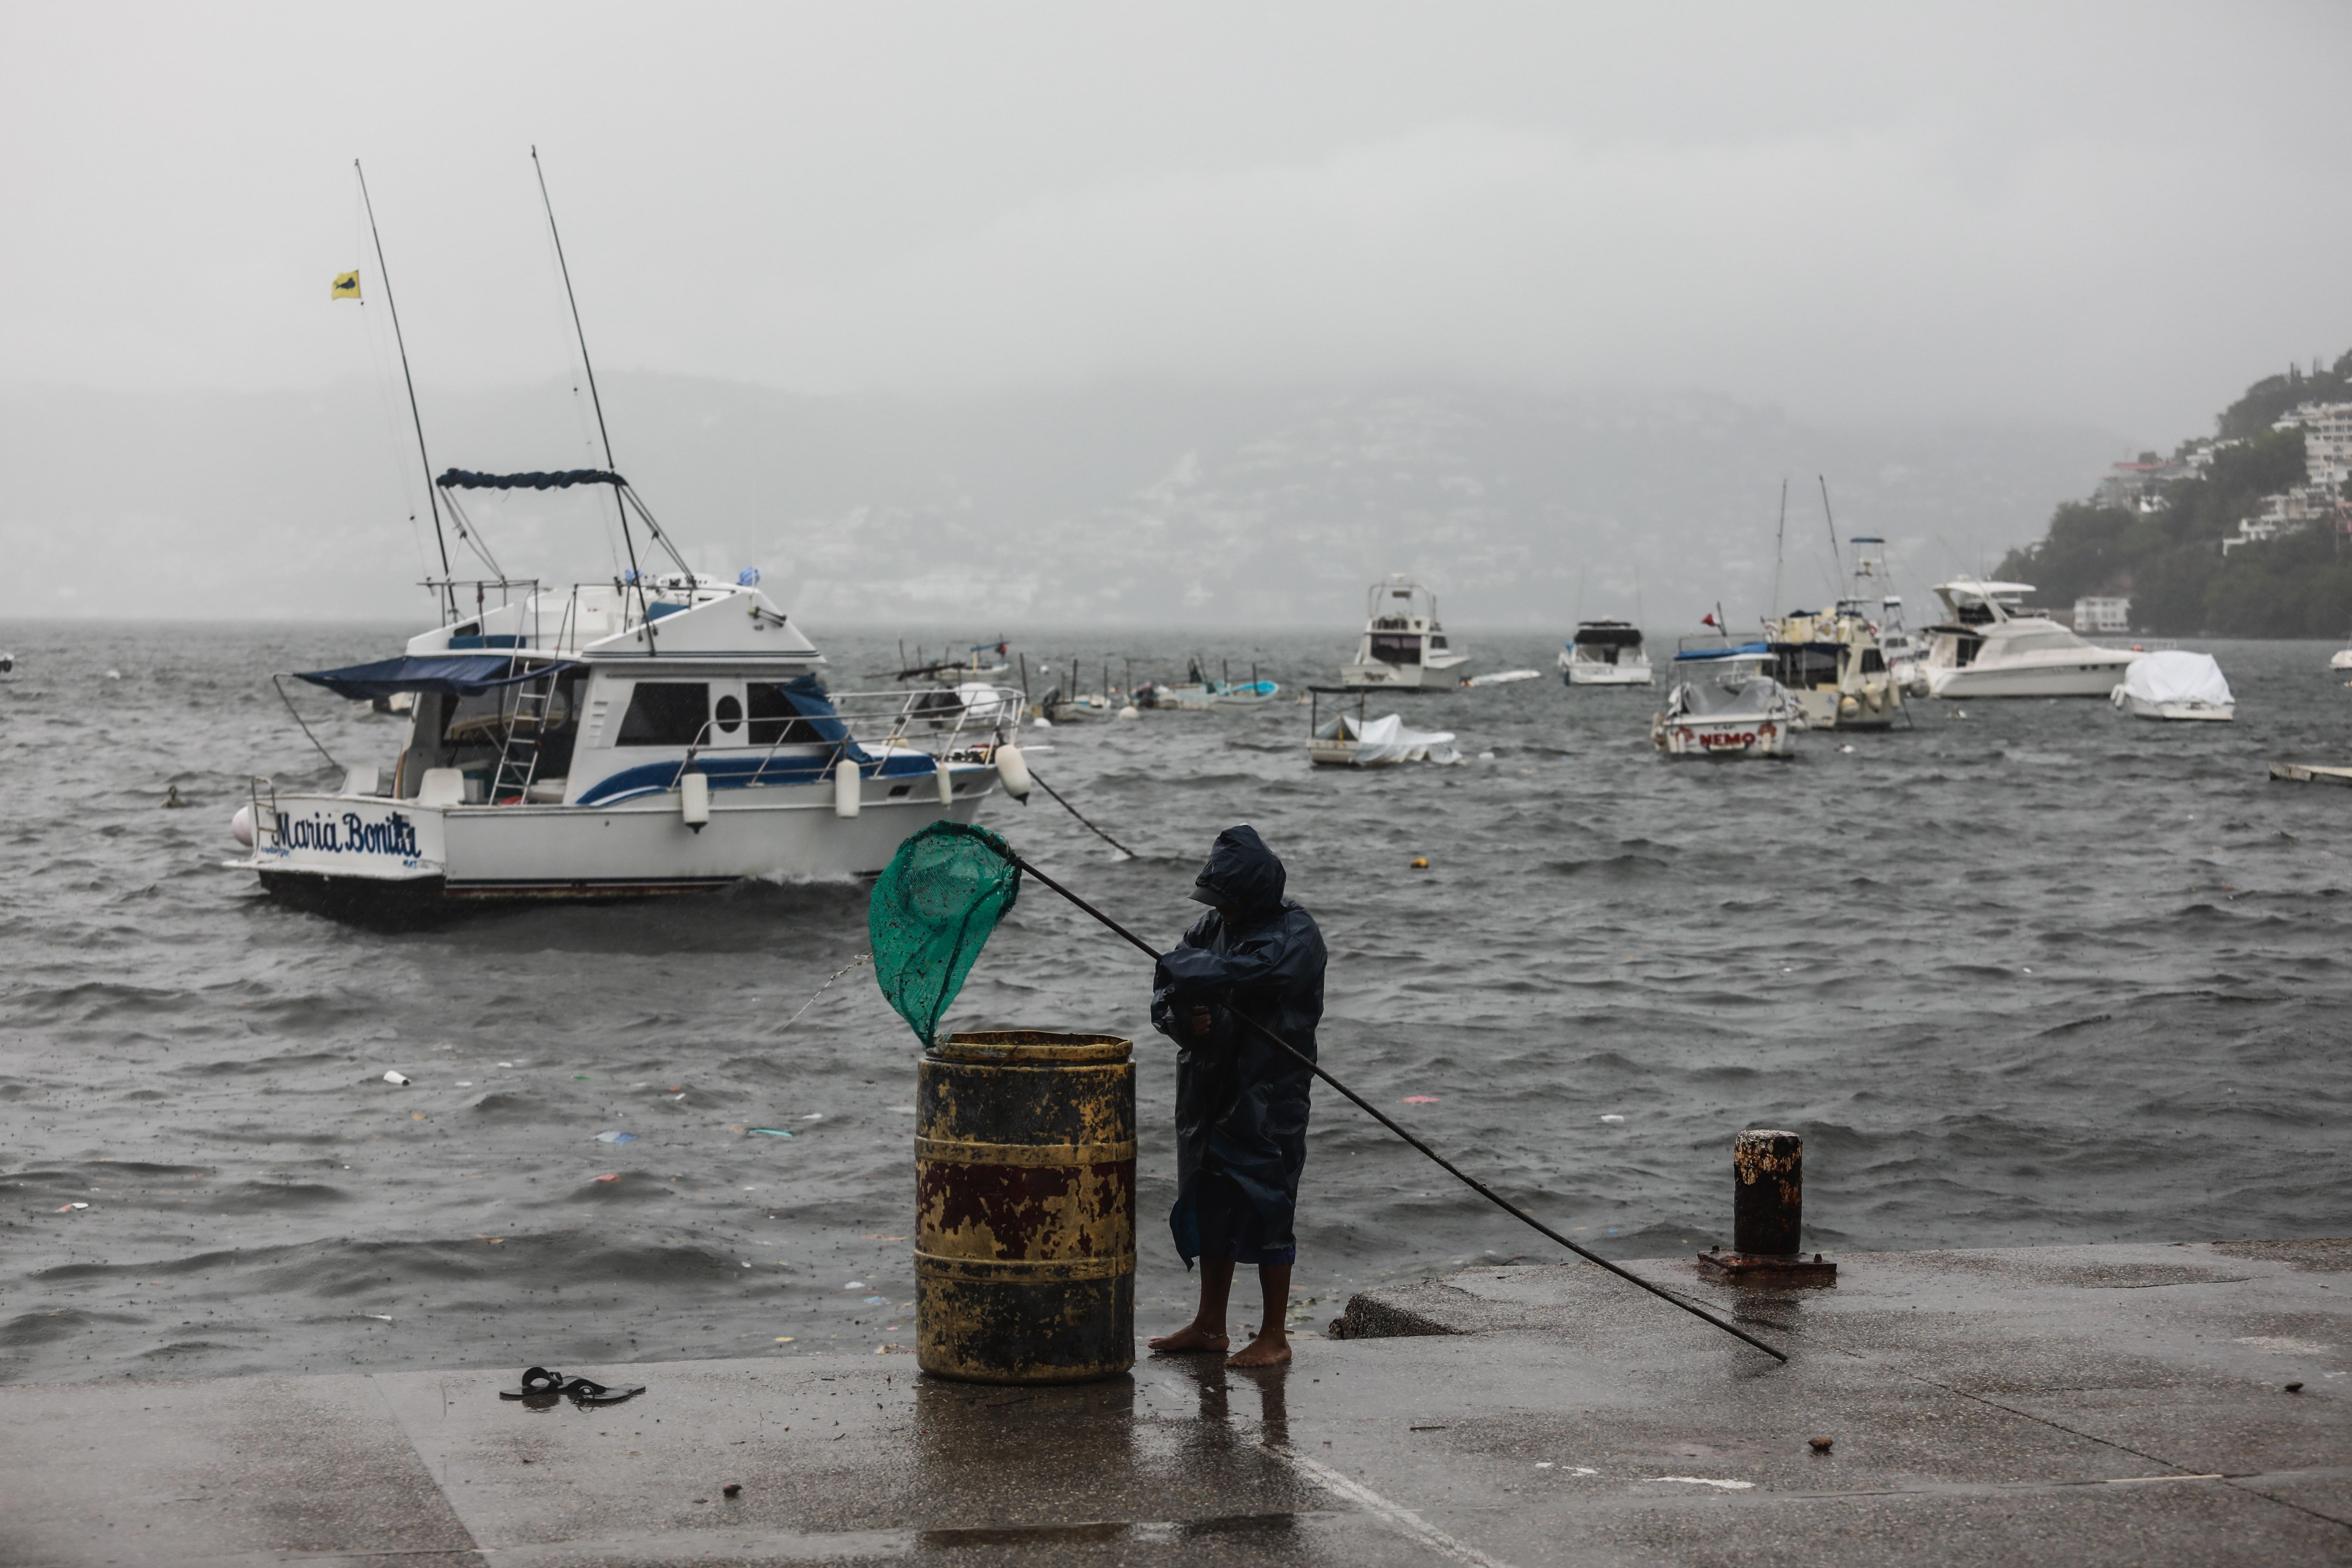 Un hombre sostiene una caña de pescar de red en el malecón de Acapulco, el cual se encuentra cerrado a la navegación debido a la tormenta tropical Enrique, en Acapulco, estado de Guerrero (México). EFE/ David Guzmán
